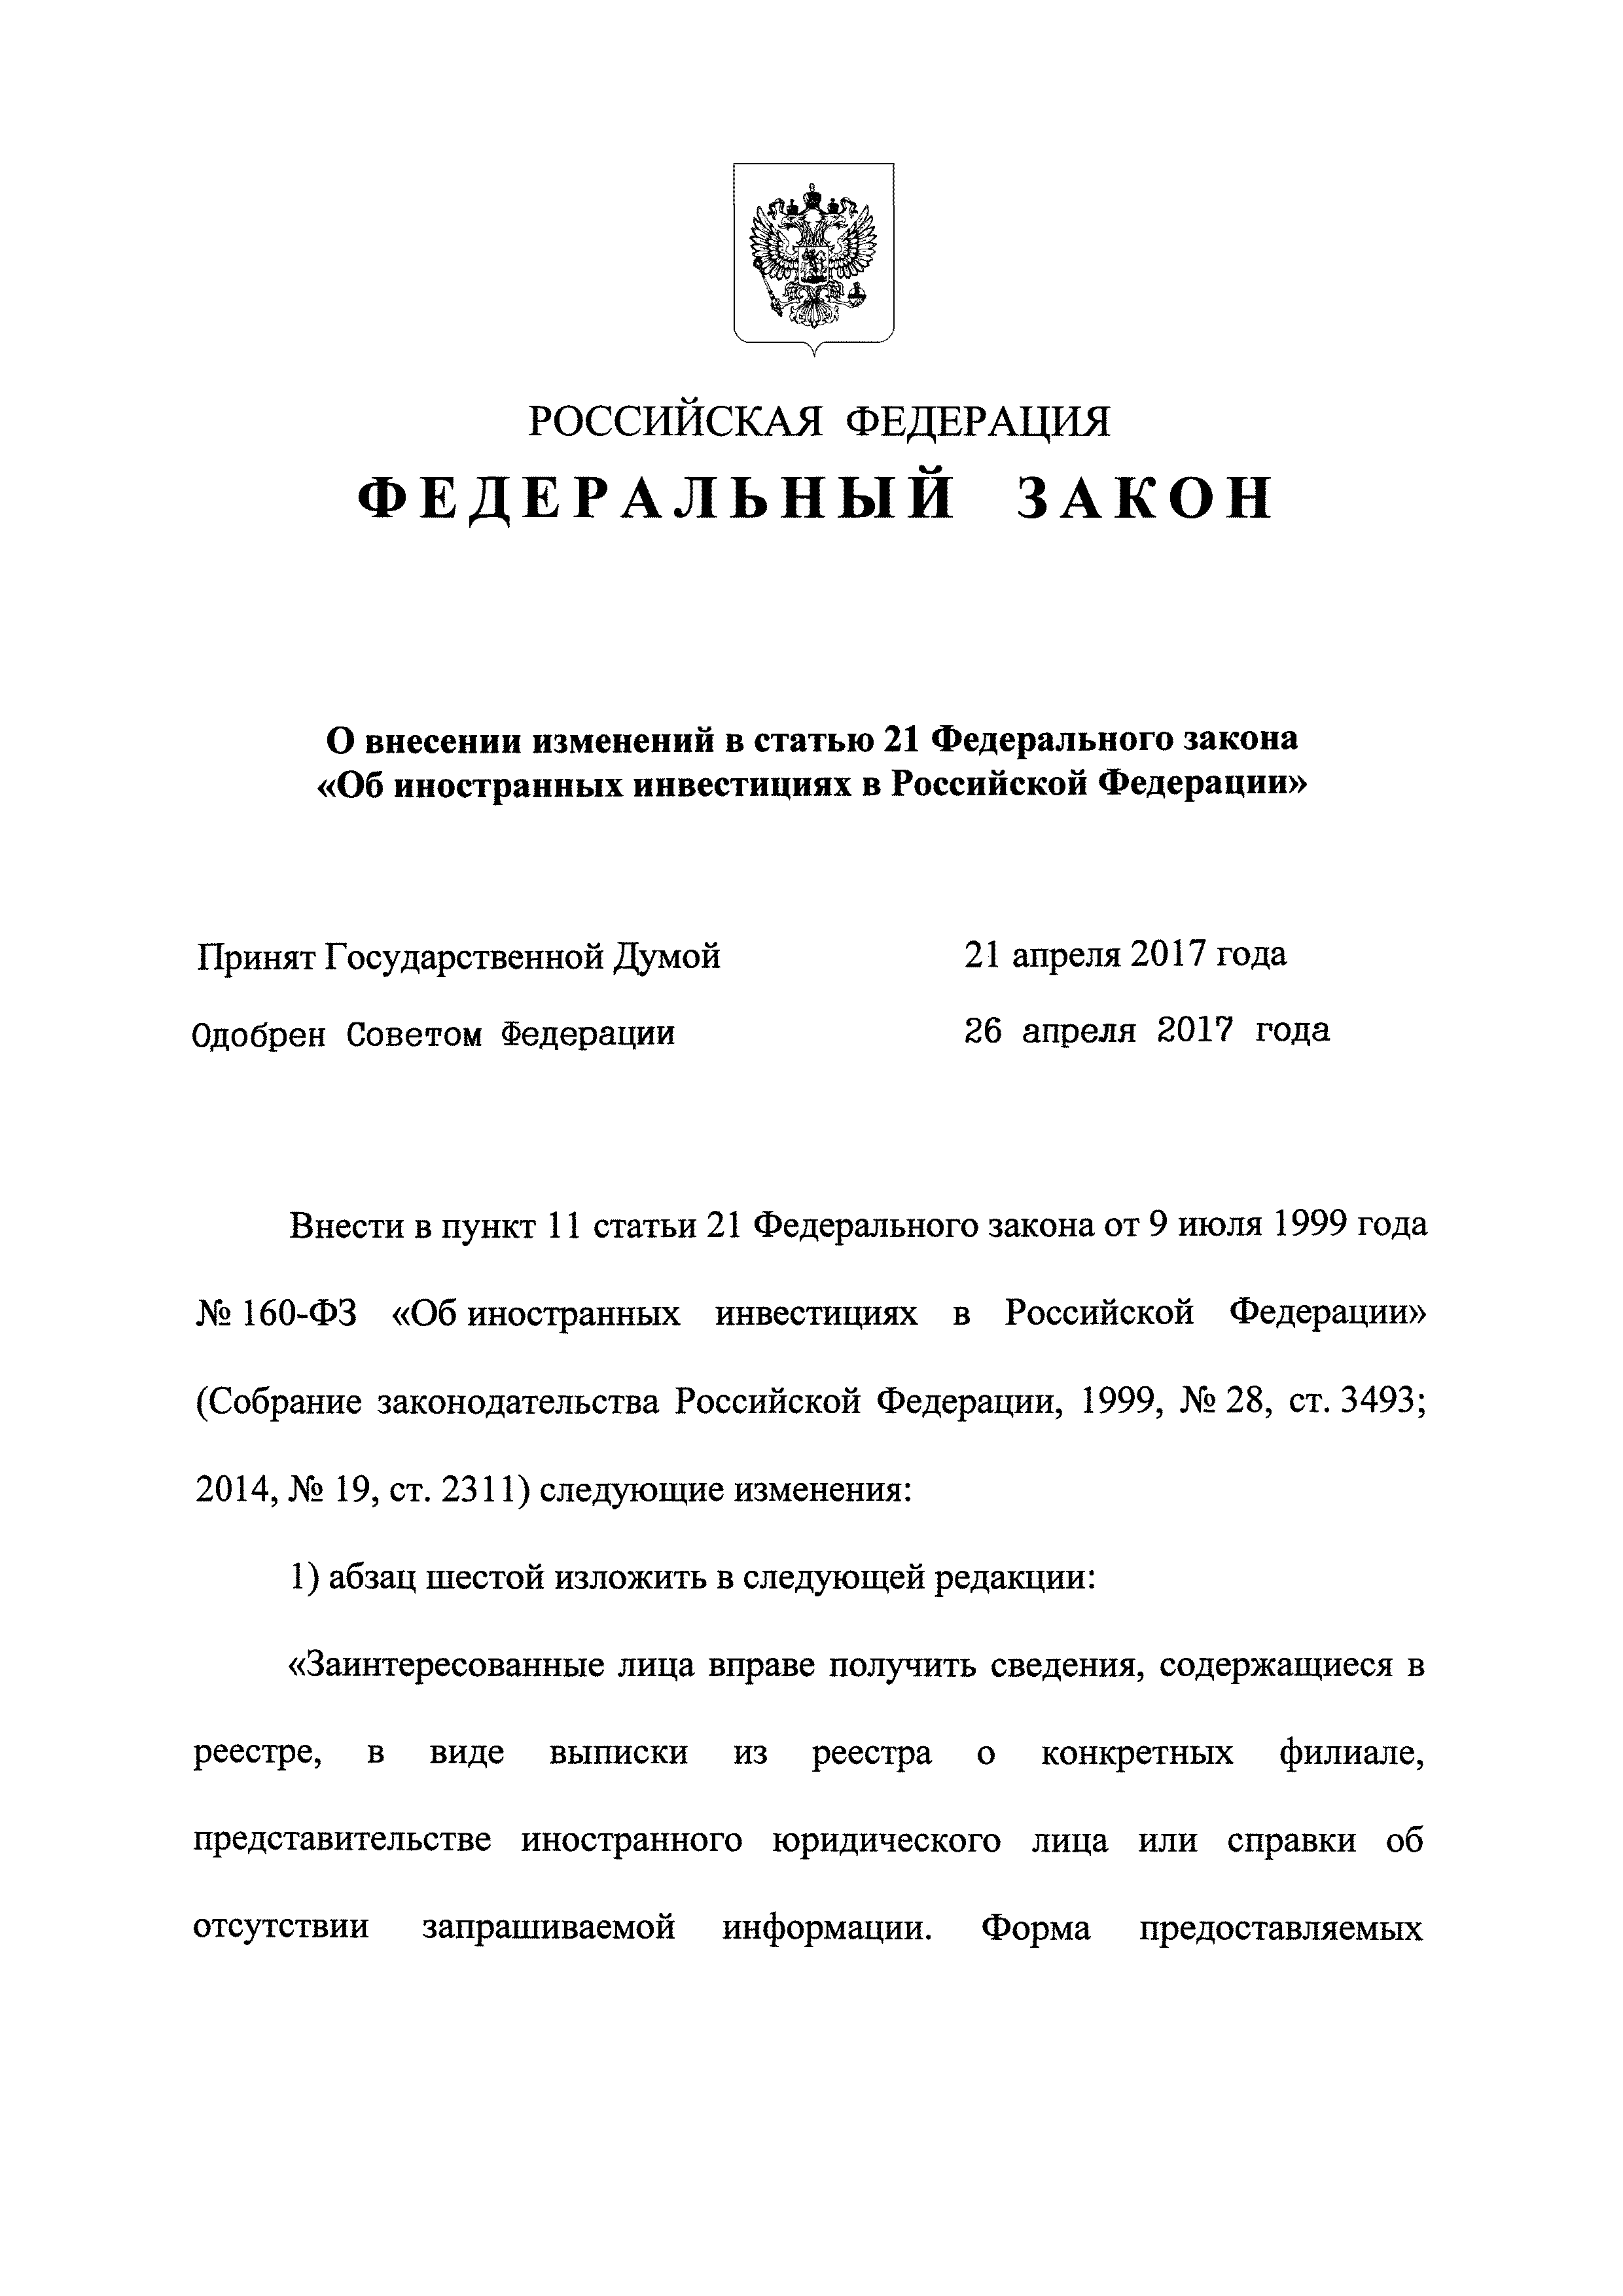 Законодательство российской федерации об иностранных инвестициях